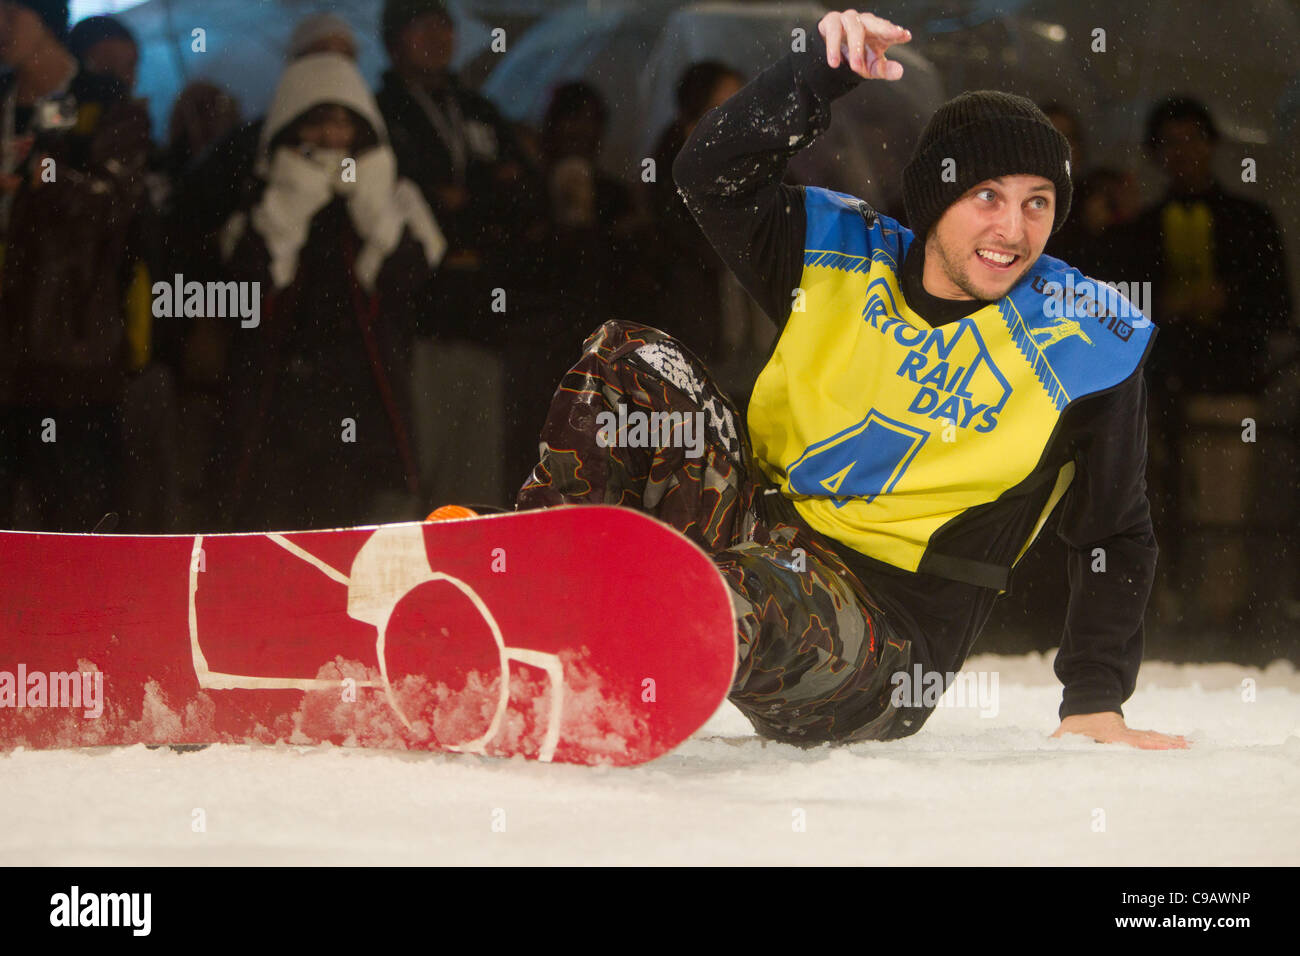 El 19 de noviembre de 2011, Tokio, Japón - El Snowboarder Scott Stevens.(USA) reacciona a los fans durante los días rampa 'Burton' presentado por mini snowboard evento en Roppongi Hills Arena. (Foto por Christopher Jue/AFLO) Foto de stock